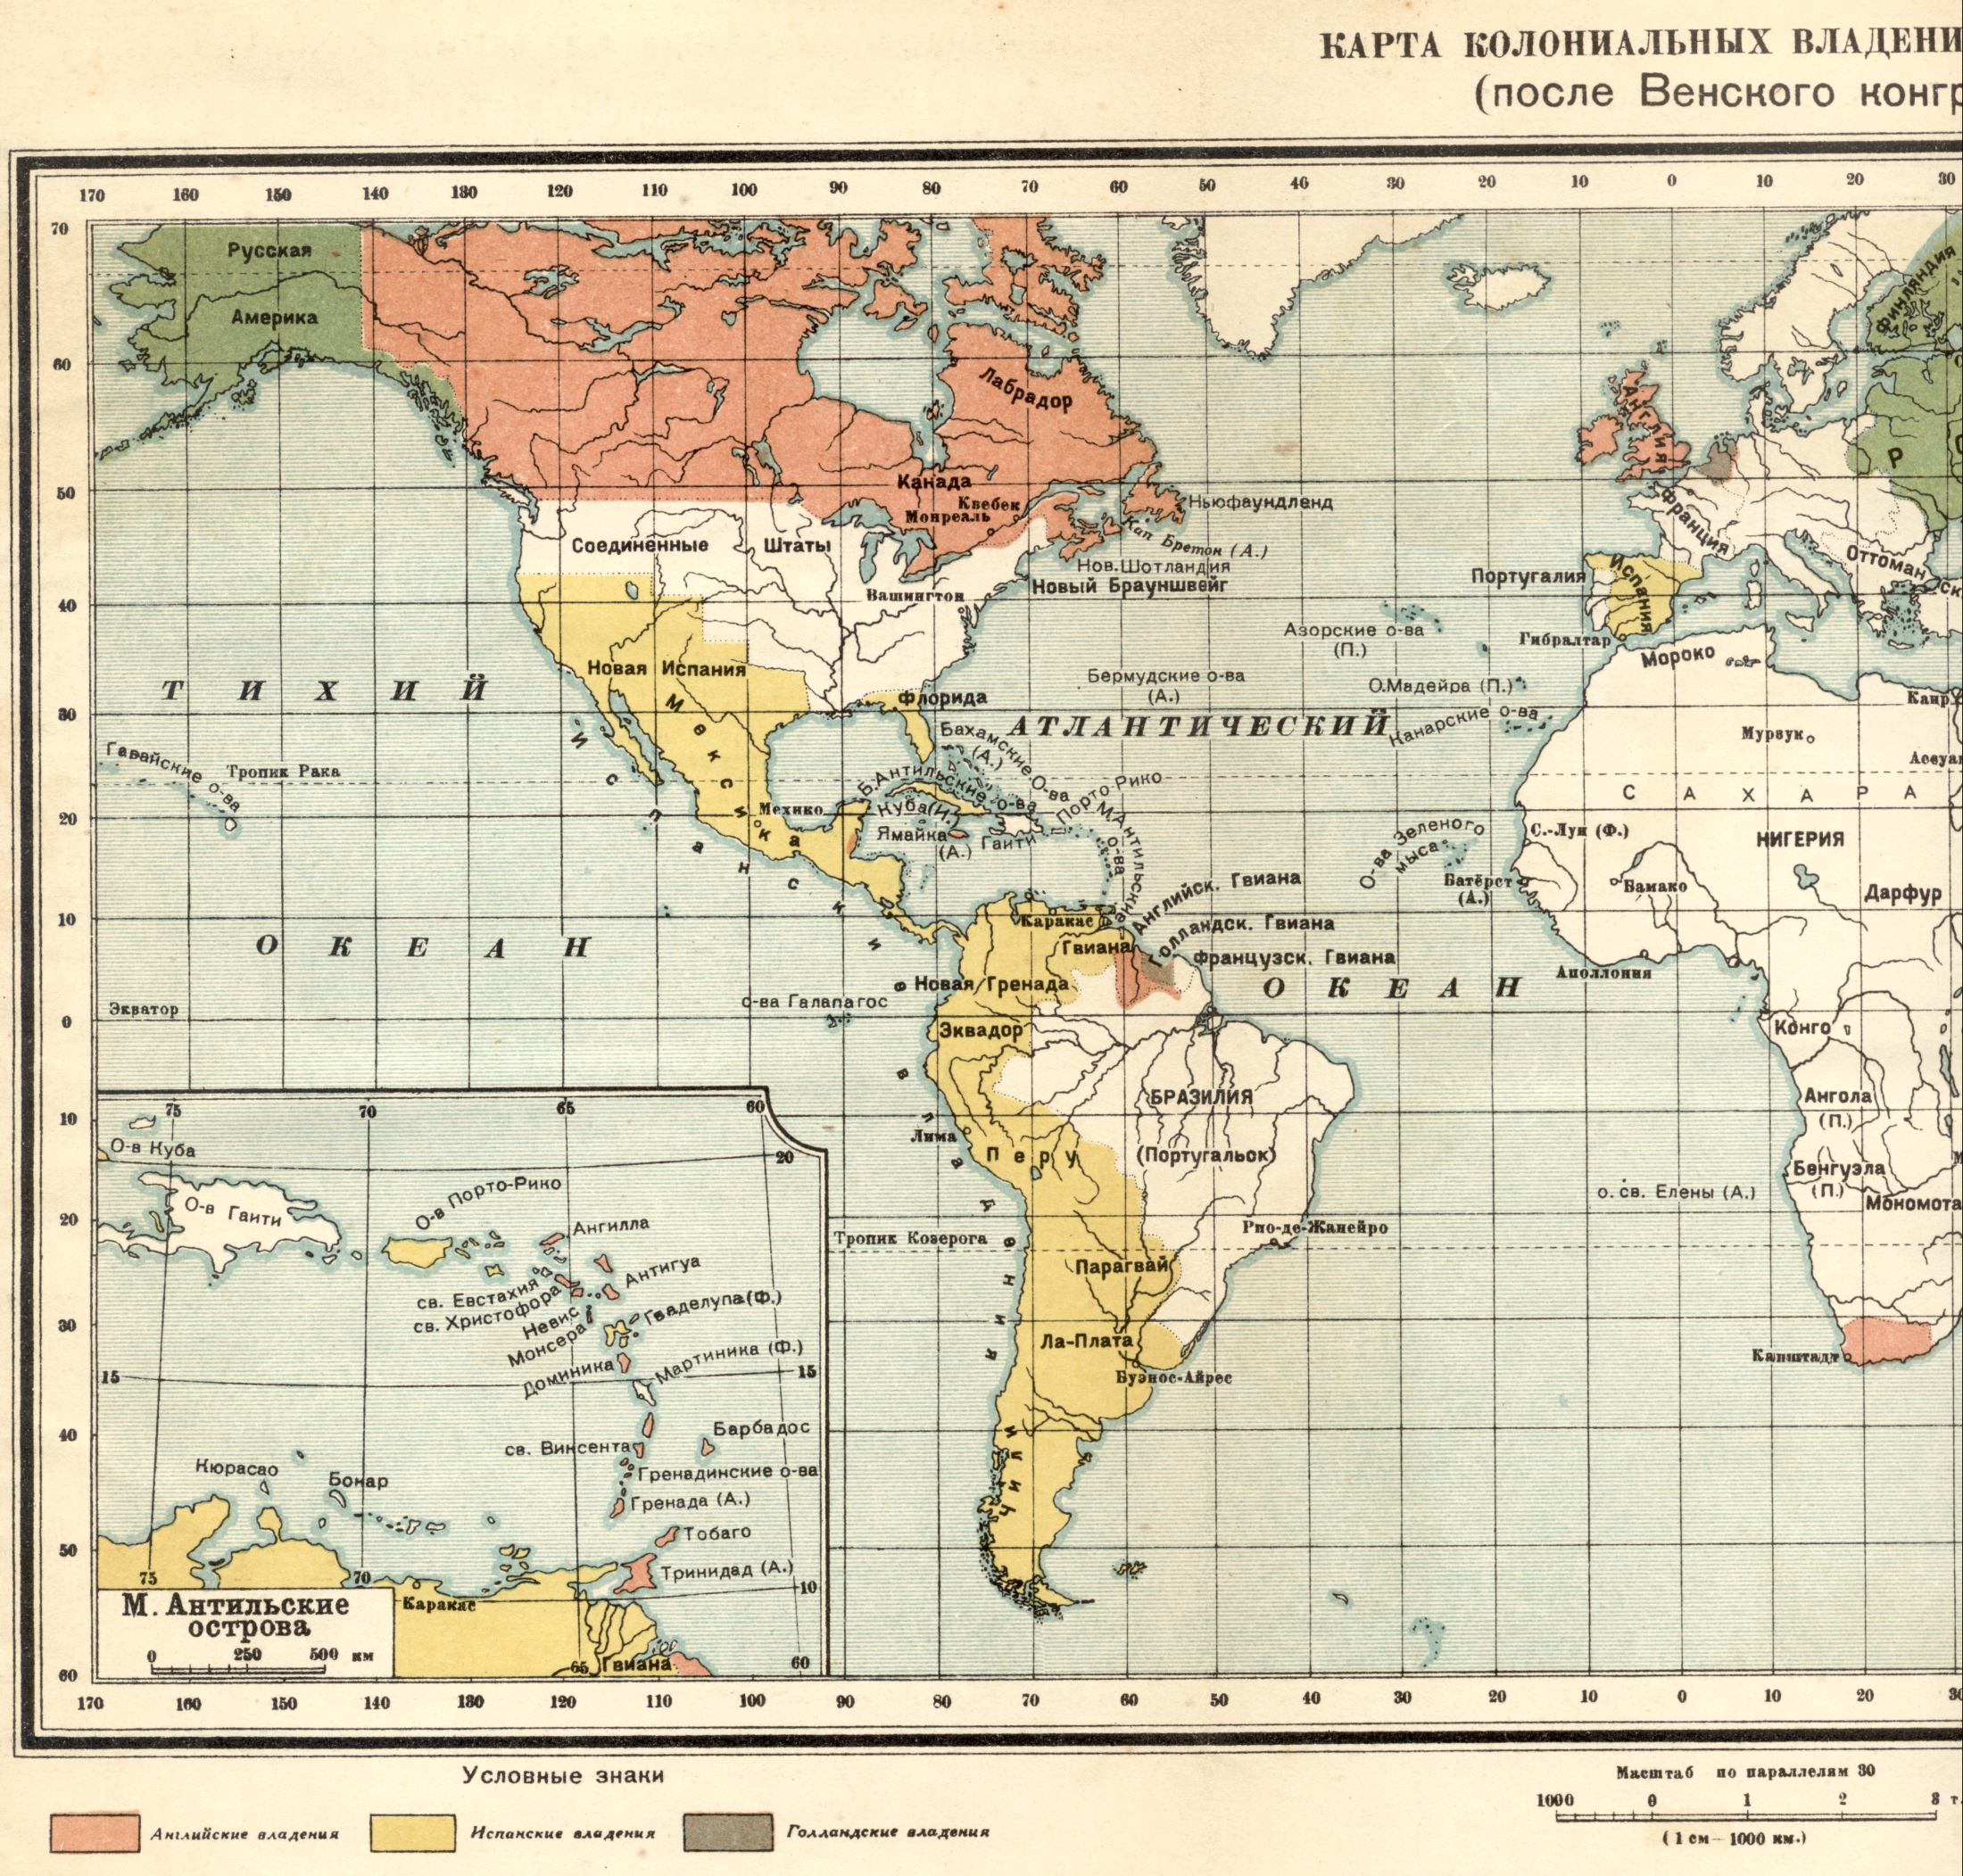 1815. La carte politique du monde - carte de possessions coloniales en 1815 après le Congrès de Vienne. Télécharger une carte détaillée